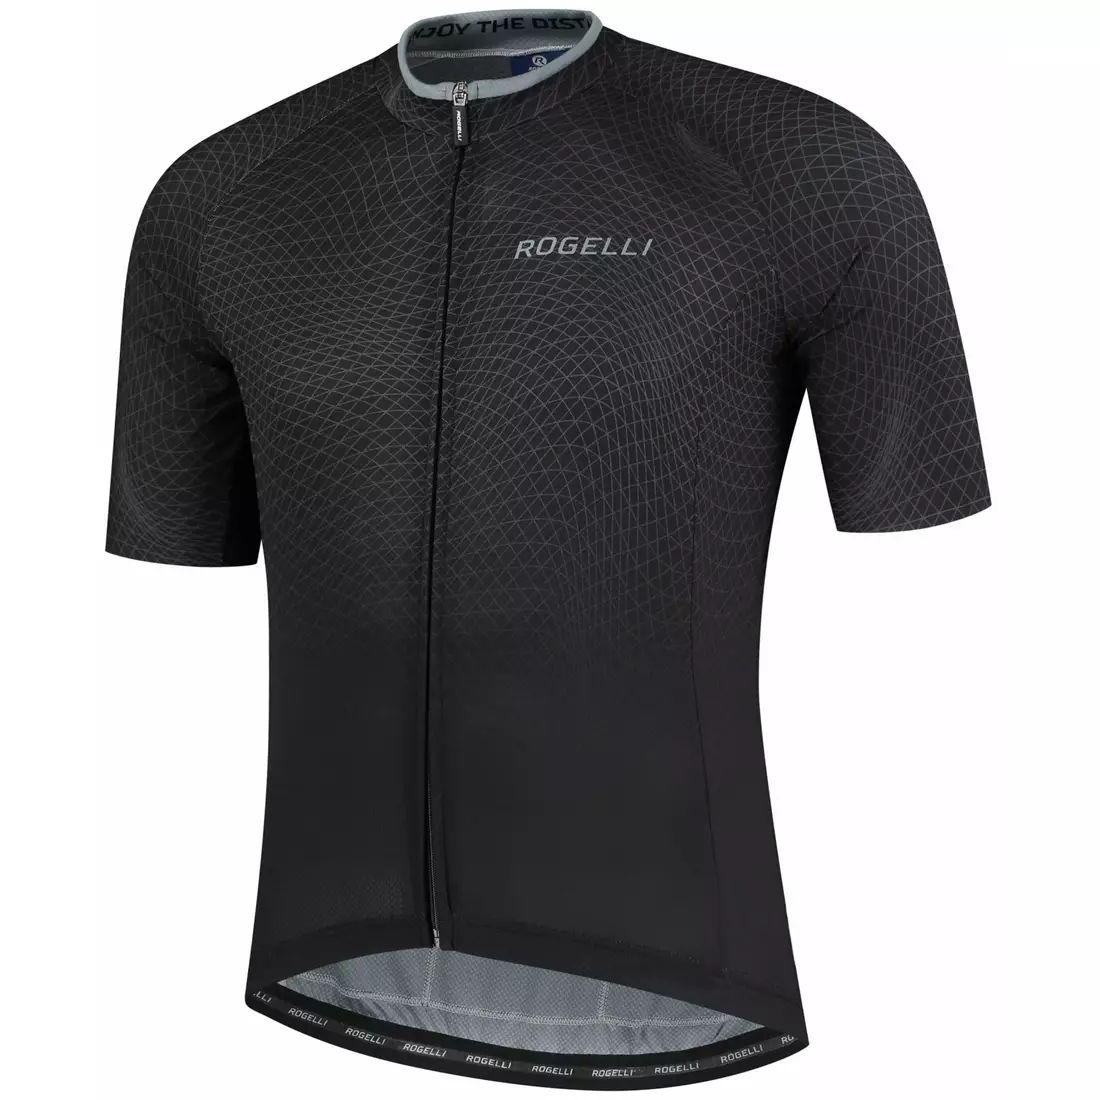 ROGELLI koszulka rowerowa męska WEAVE black/grey 001.330